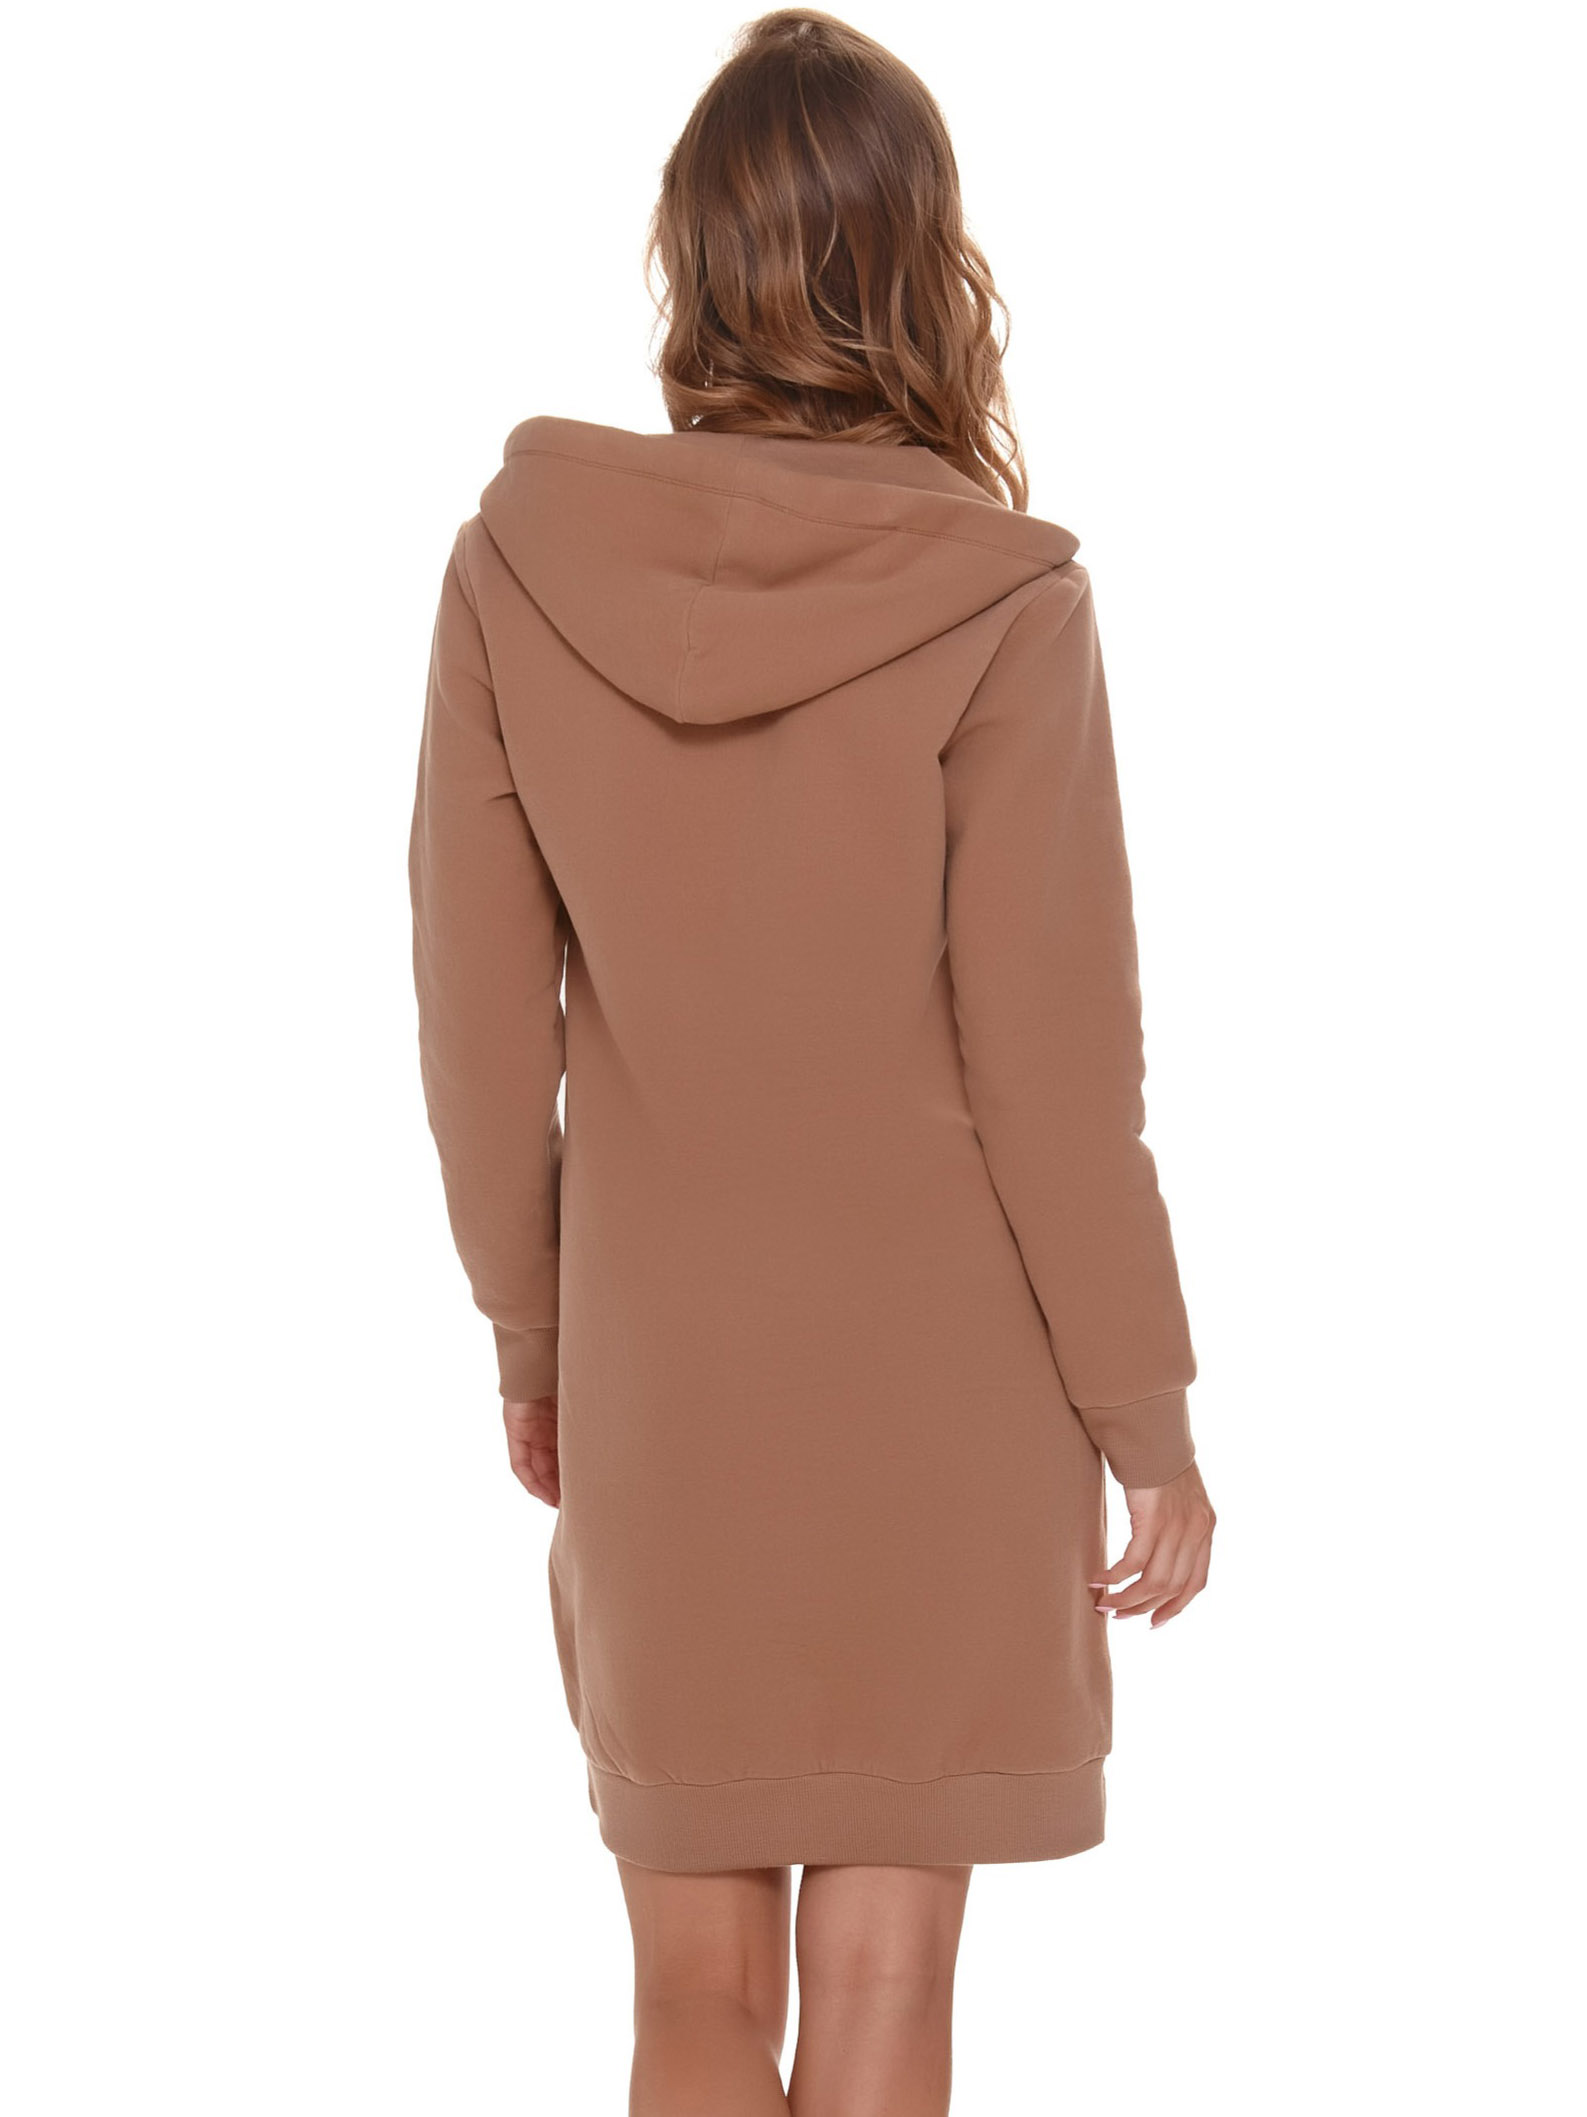 Тёплый женский хлопковый халат с начёсом длиной до колена Doctor Nap SMZ 9756 #2